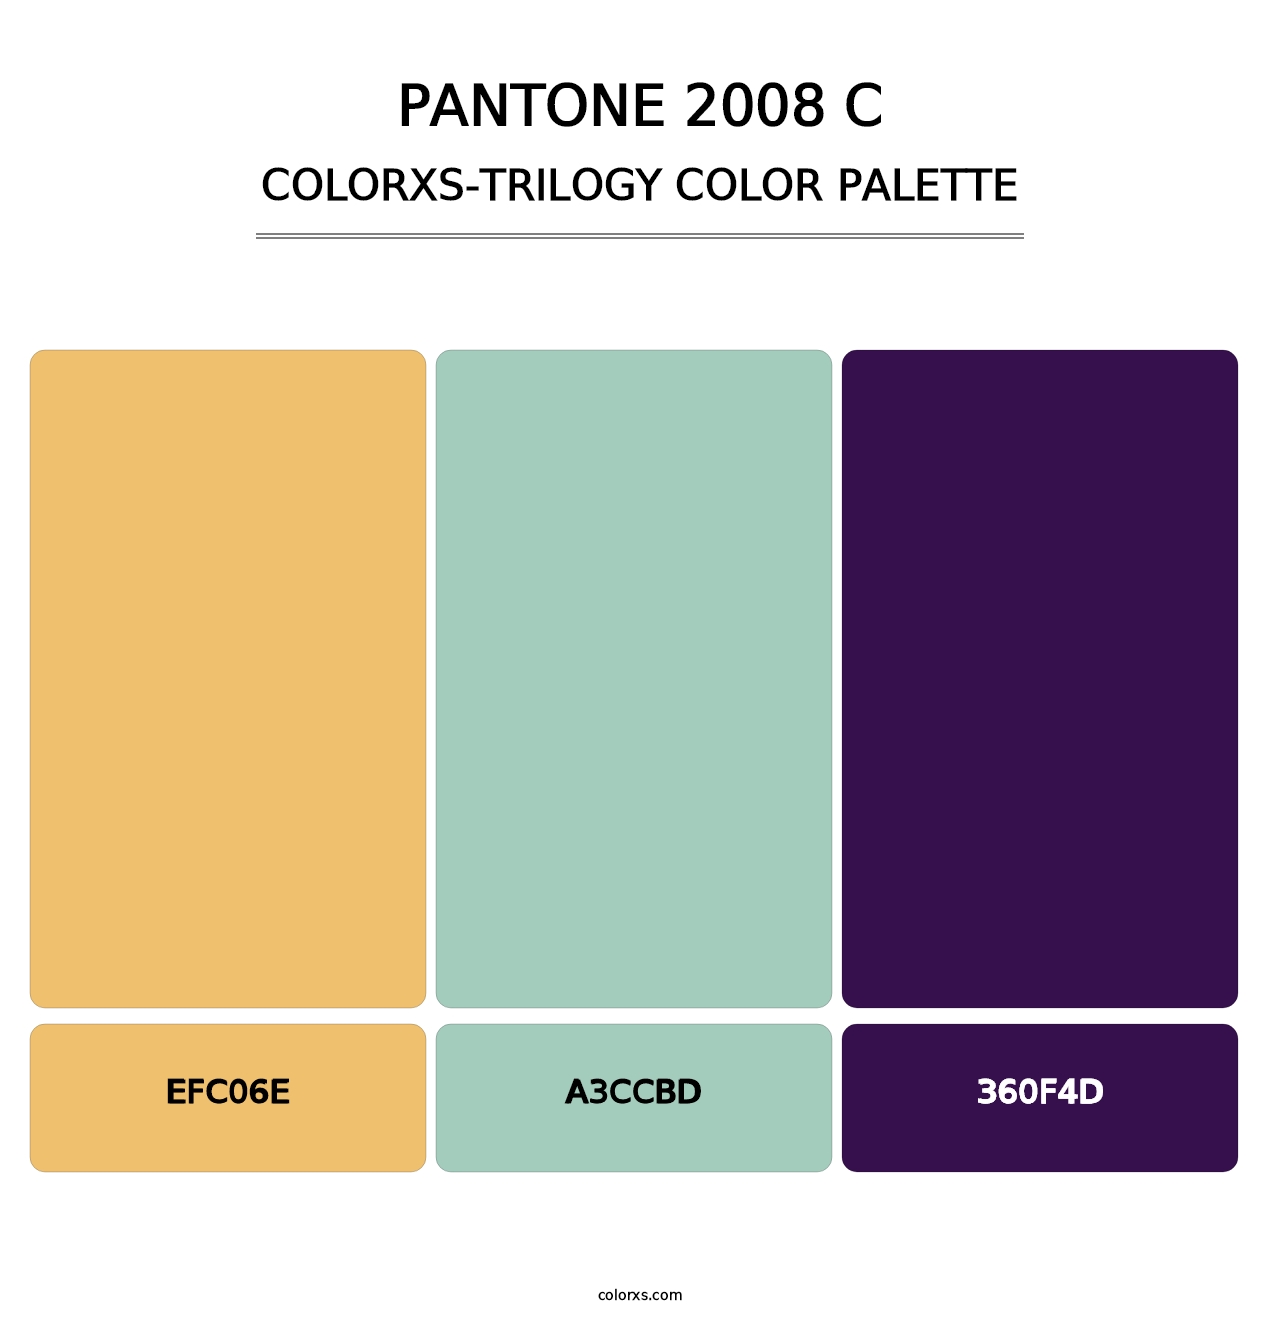 PANTONE 2008 C - Colorxs Trilogy Palette